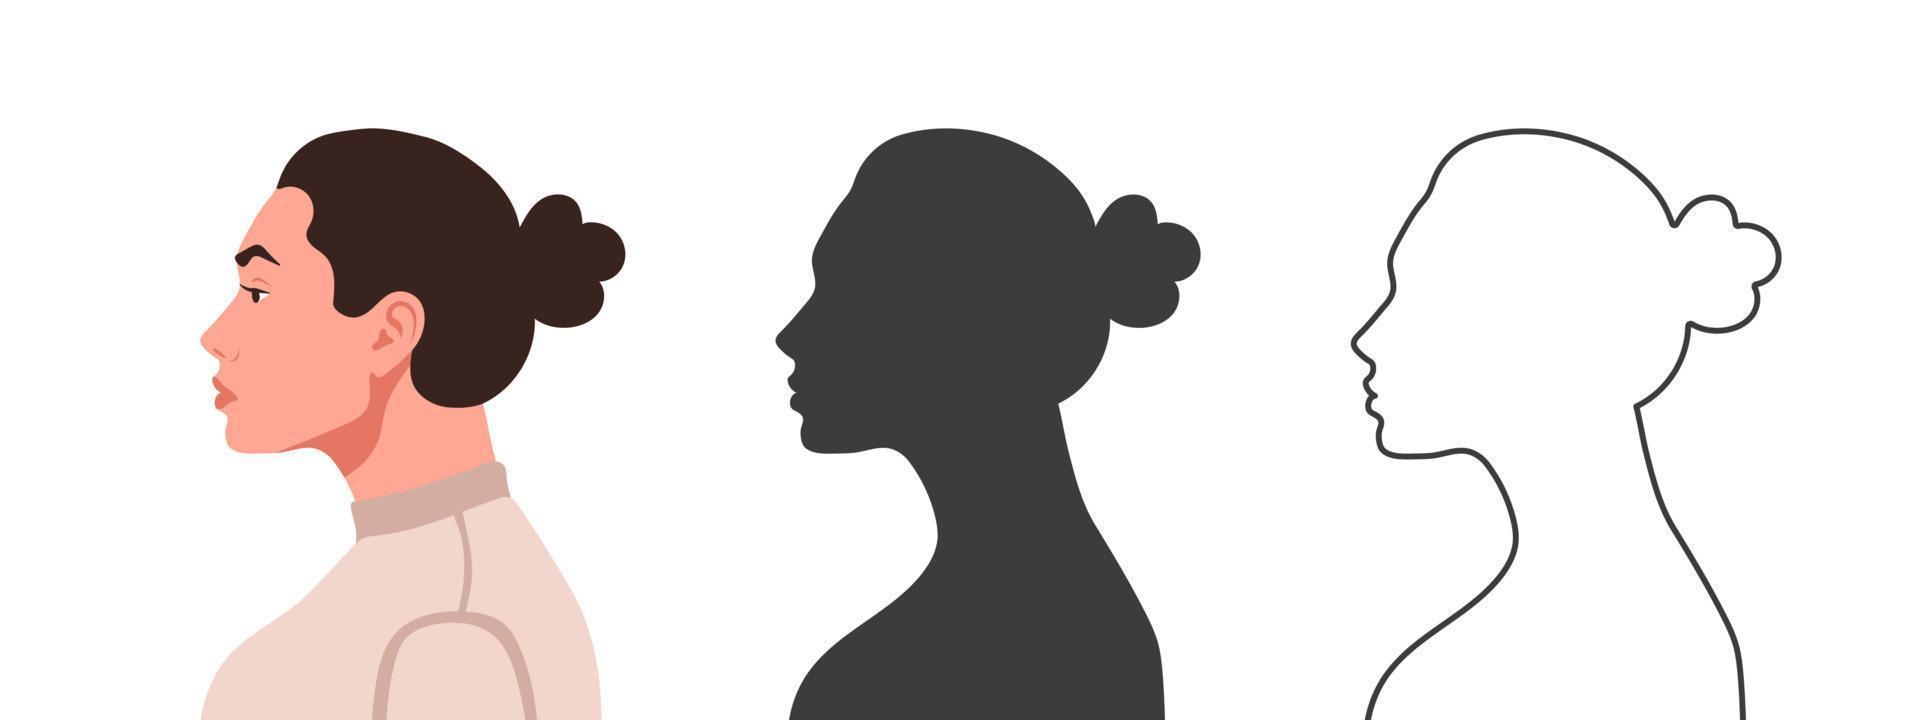 perfil da cabeça. rosto de mulher de lado. silhuetas de pessoas em três estilos diferentes. perfil facial. ilustração vetorial vetor